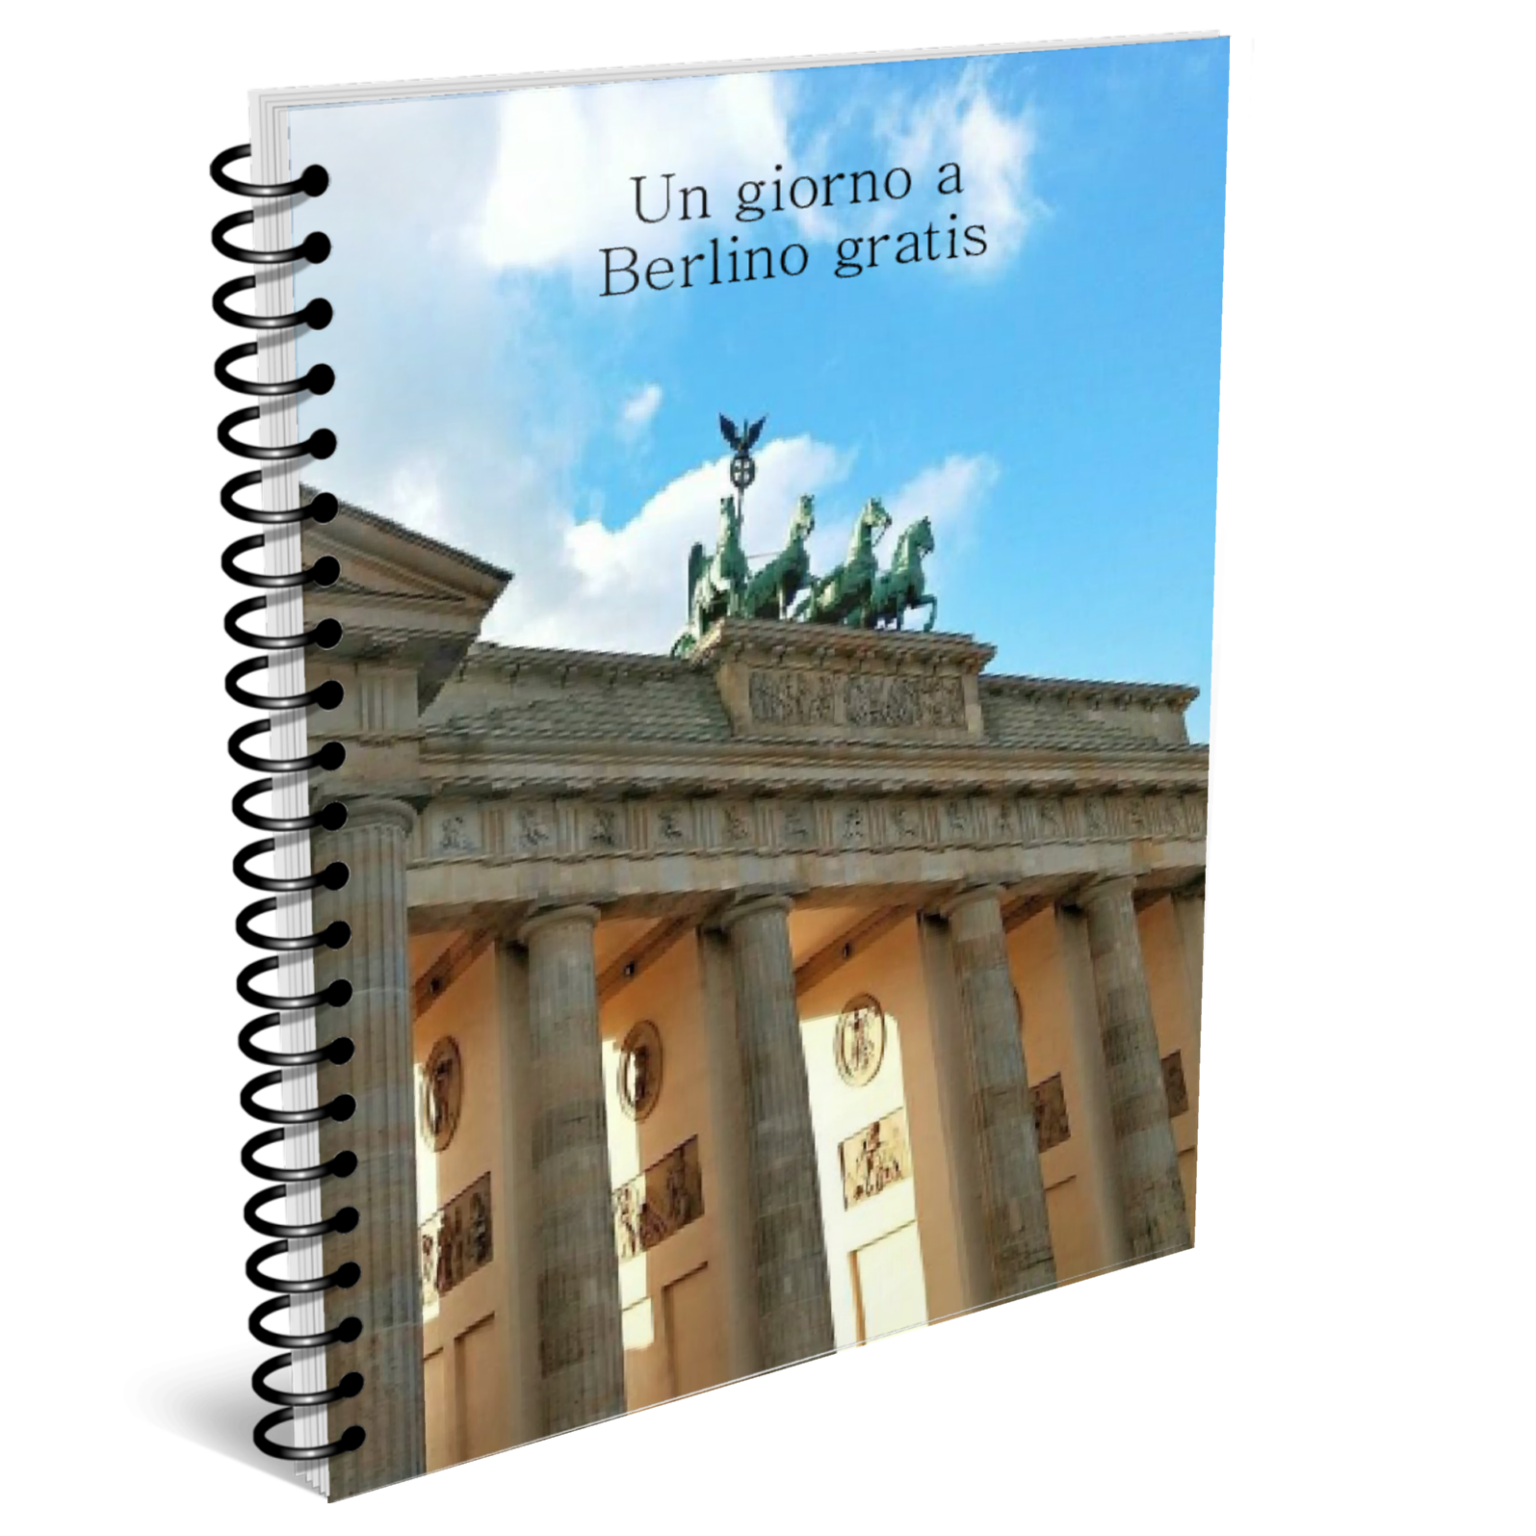 Guida gratuita di un giorno a Berlino